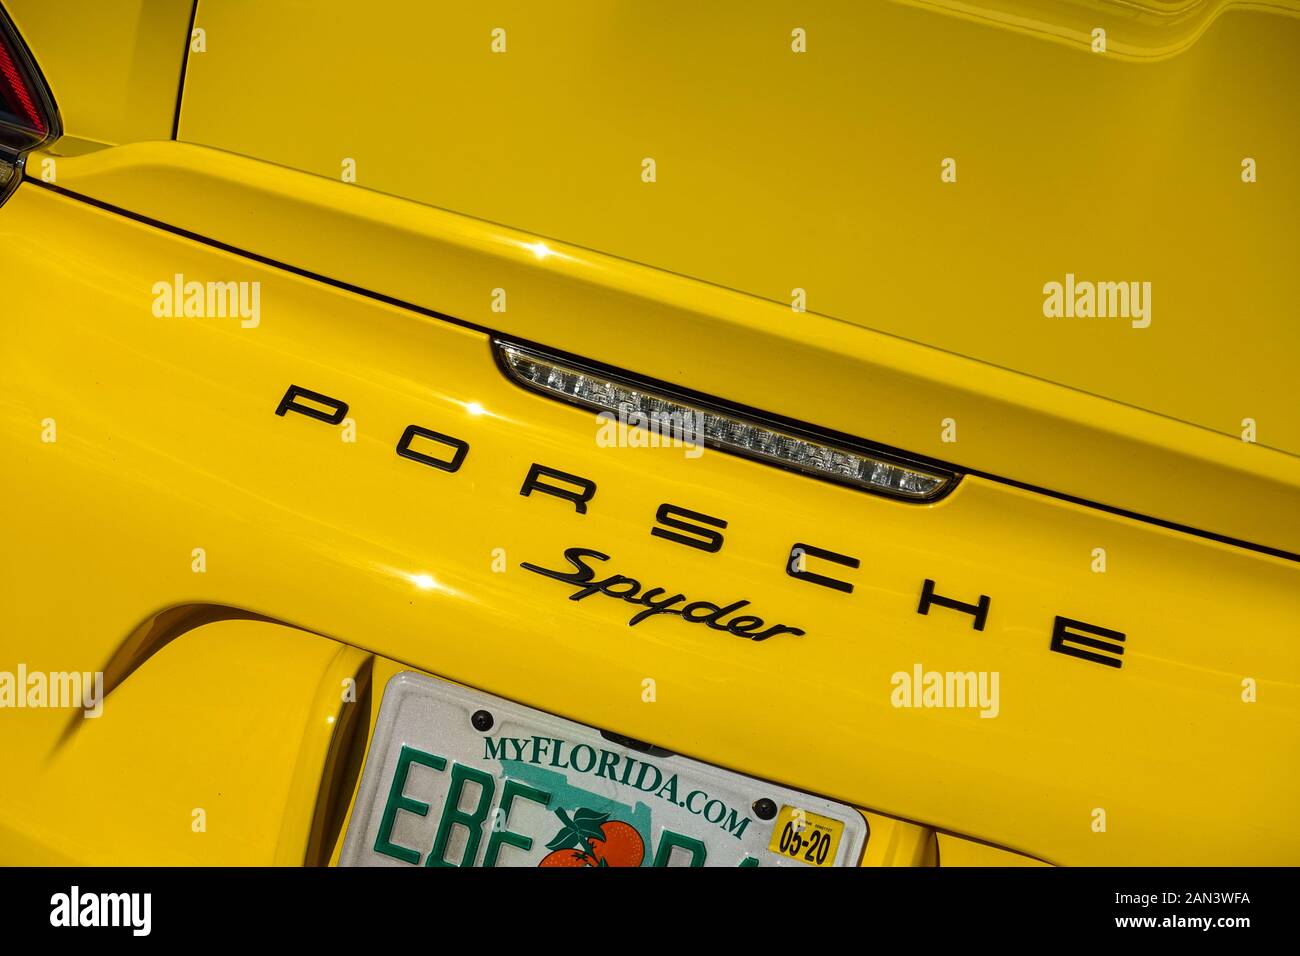 Orlando, FL/USA-1/15/20: The rearend of a yellow Porsche Spyder. Stock Photo